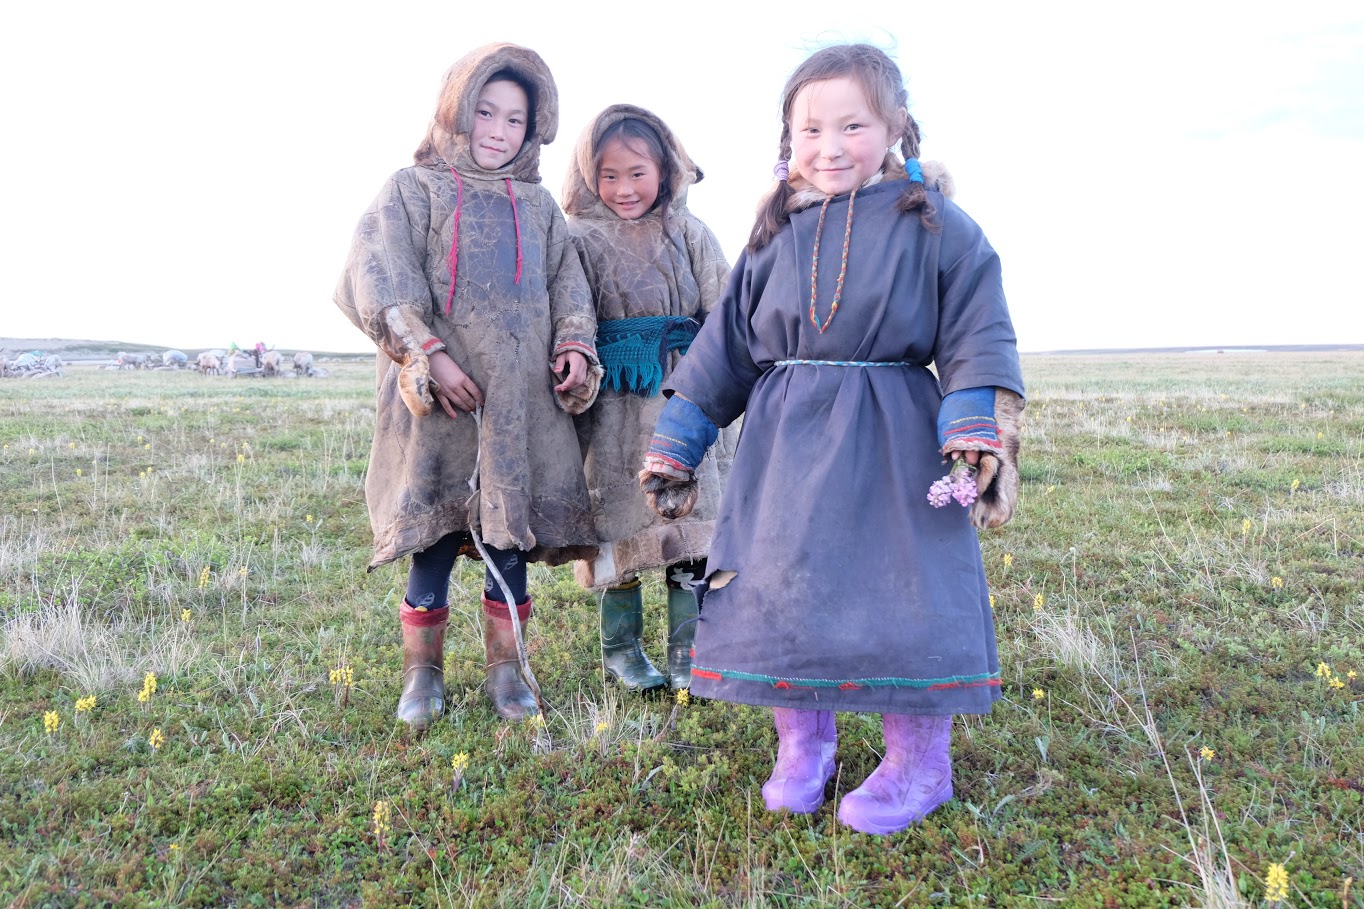 PÅ TUNDRAEN: Barna i Nenets er hjemme på tundraen bare tre måneder i året, resten av tiden går de på internatskole, langt hjemmefra. Foto: Privat